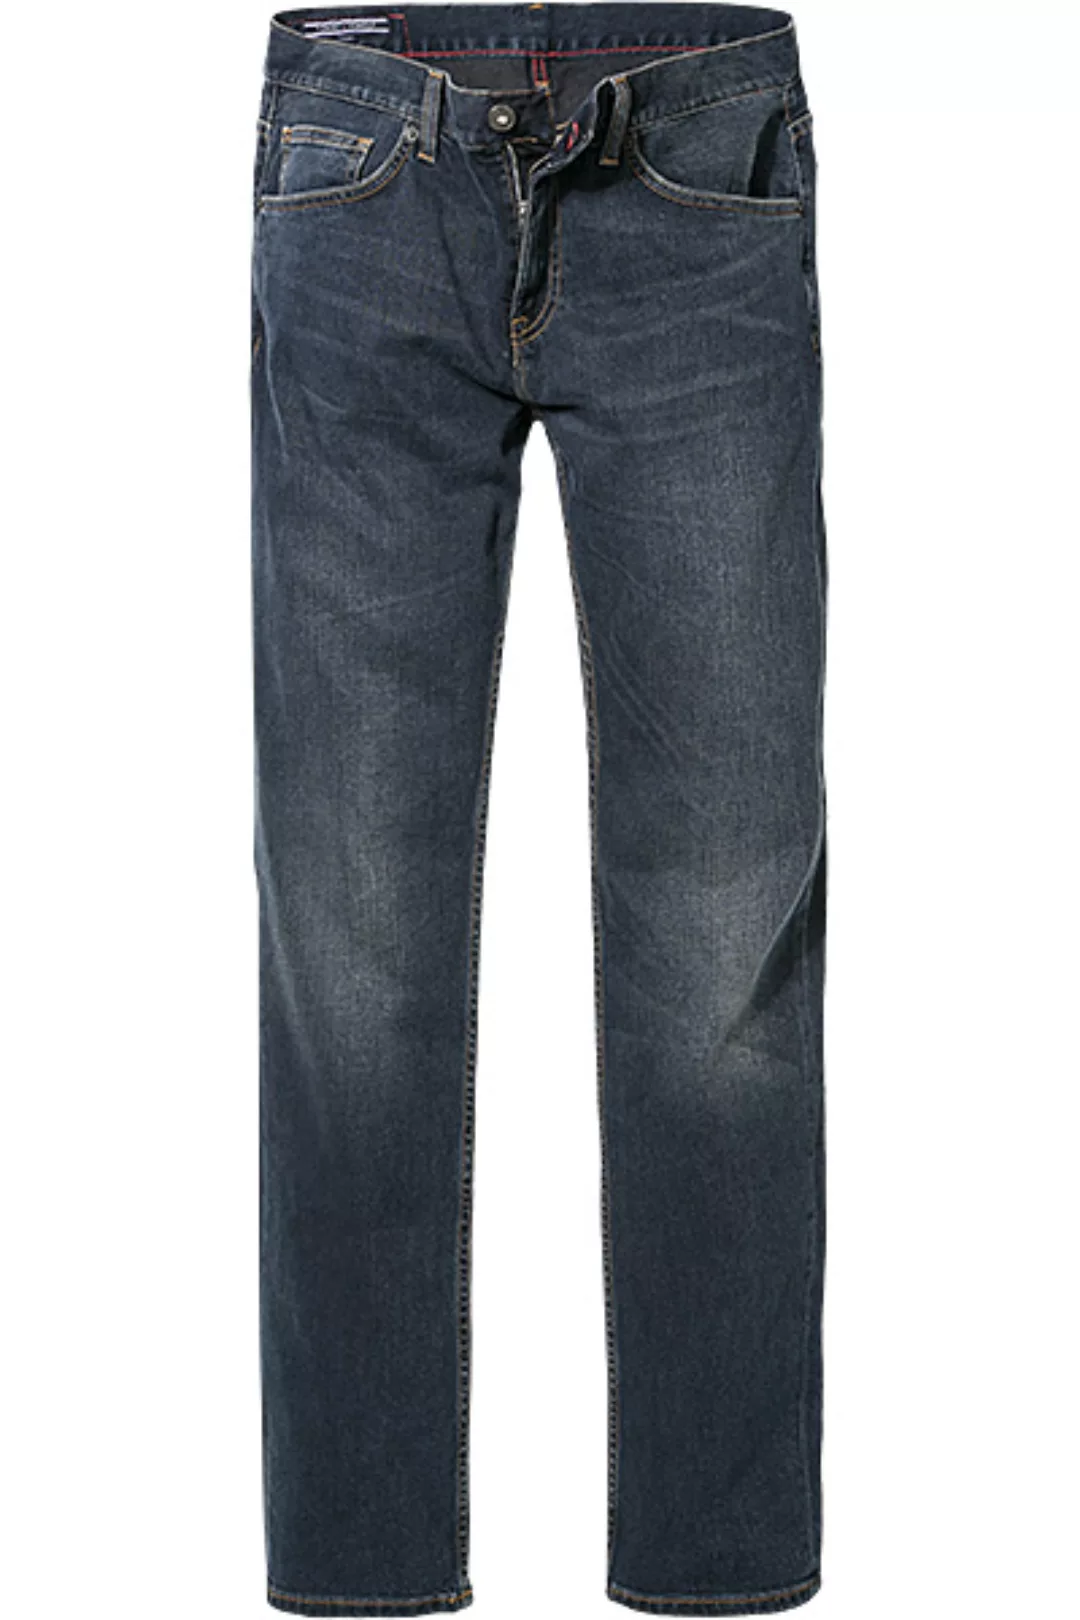 Tommy Hilfiger Jeans Denton B 086787/9559/299 günstig online kaufen